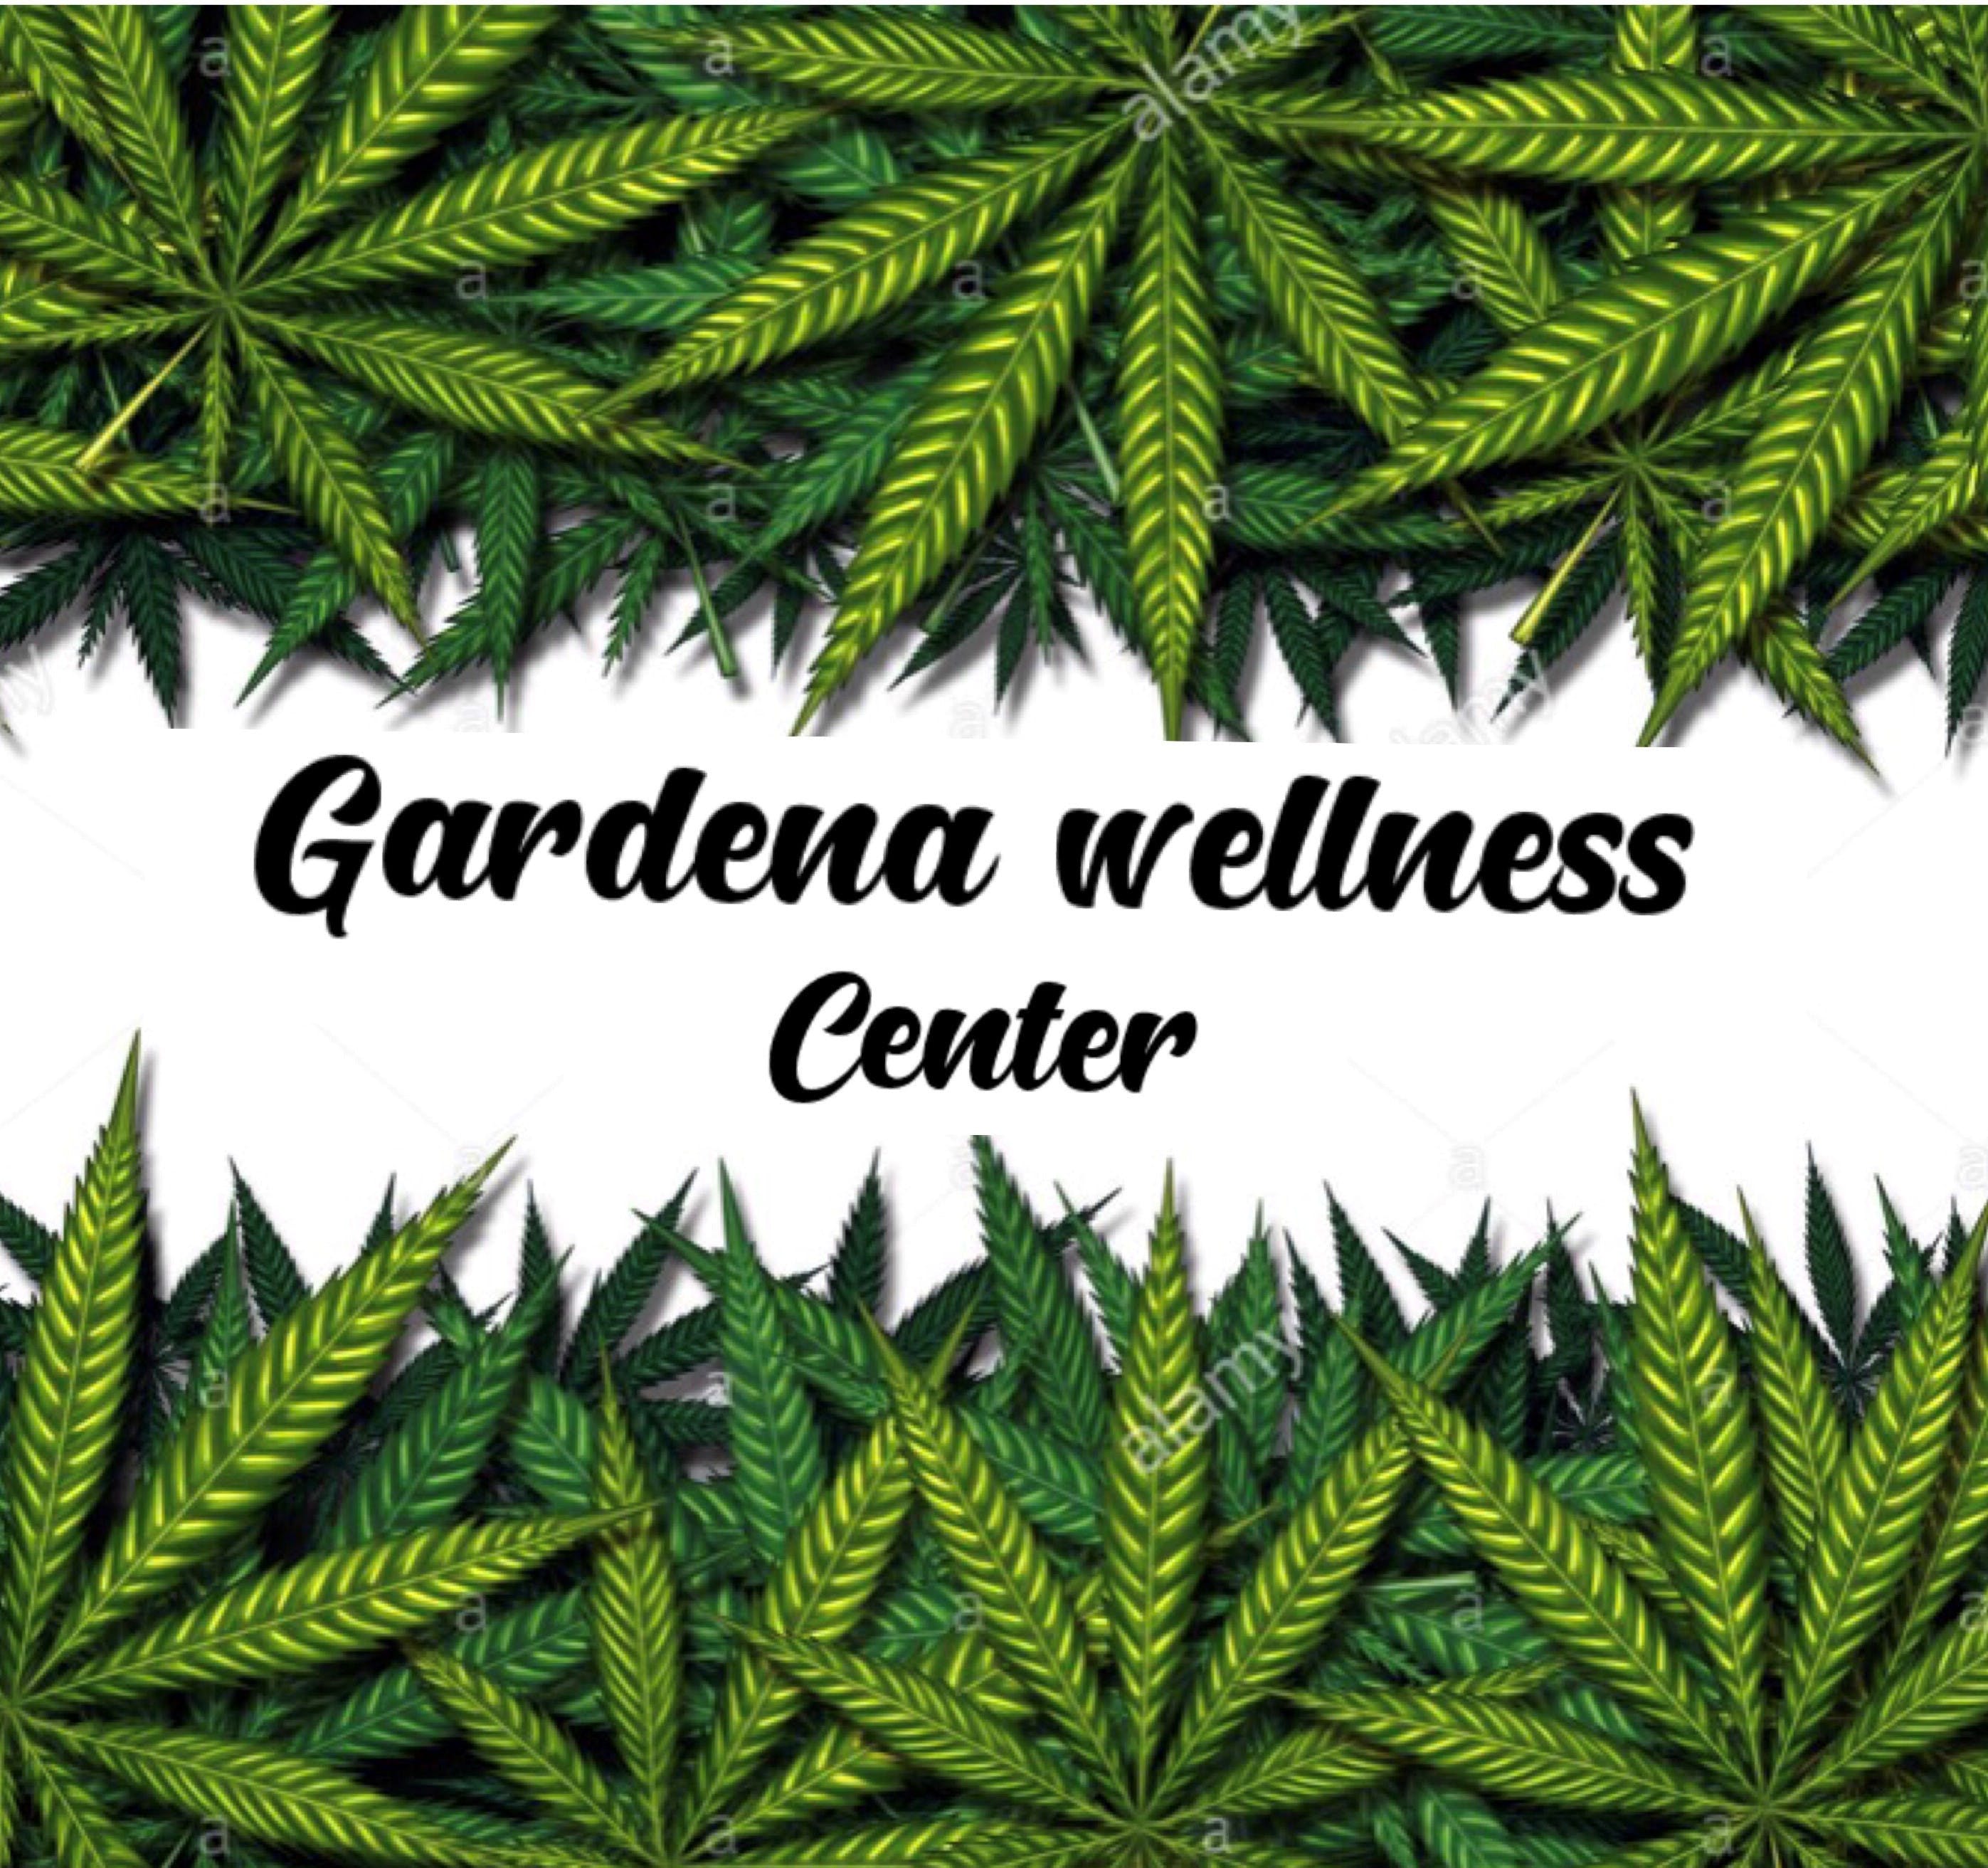 Gardena Wellness Center - GWC - Medical Marijuana Doctors - Cannabizme.com